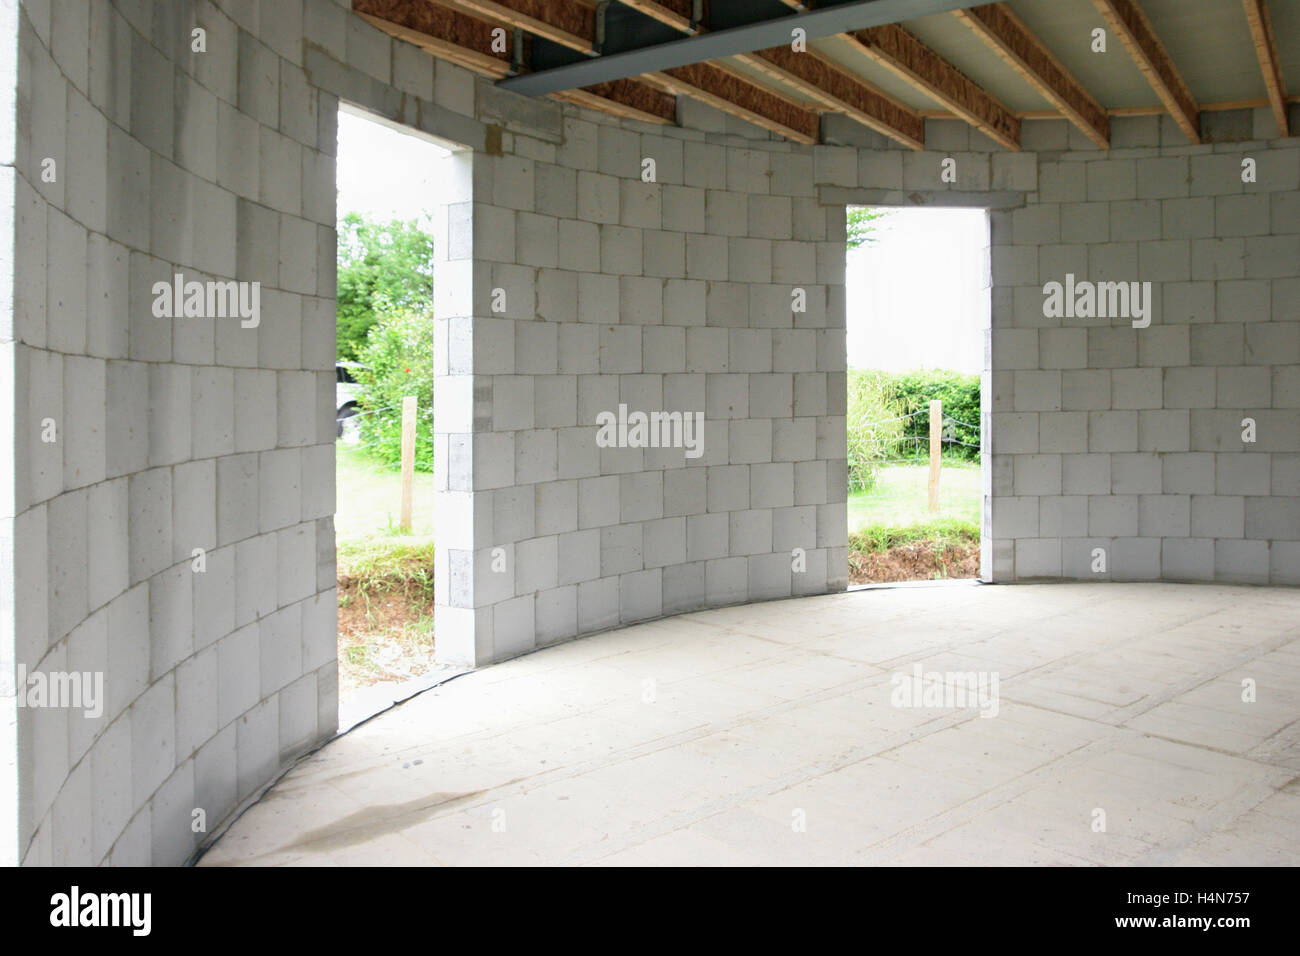 Innenraum eines kreisförmigen Haus im Bau in Whitstable, Großbritannien. Zeigt Betonsteine, Holz Balken und Stahlträger Stockfoto